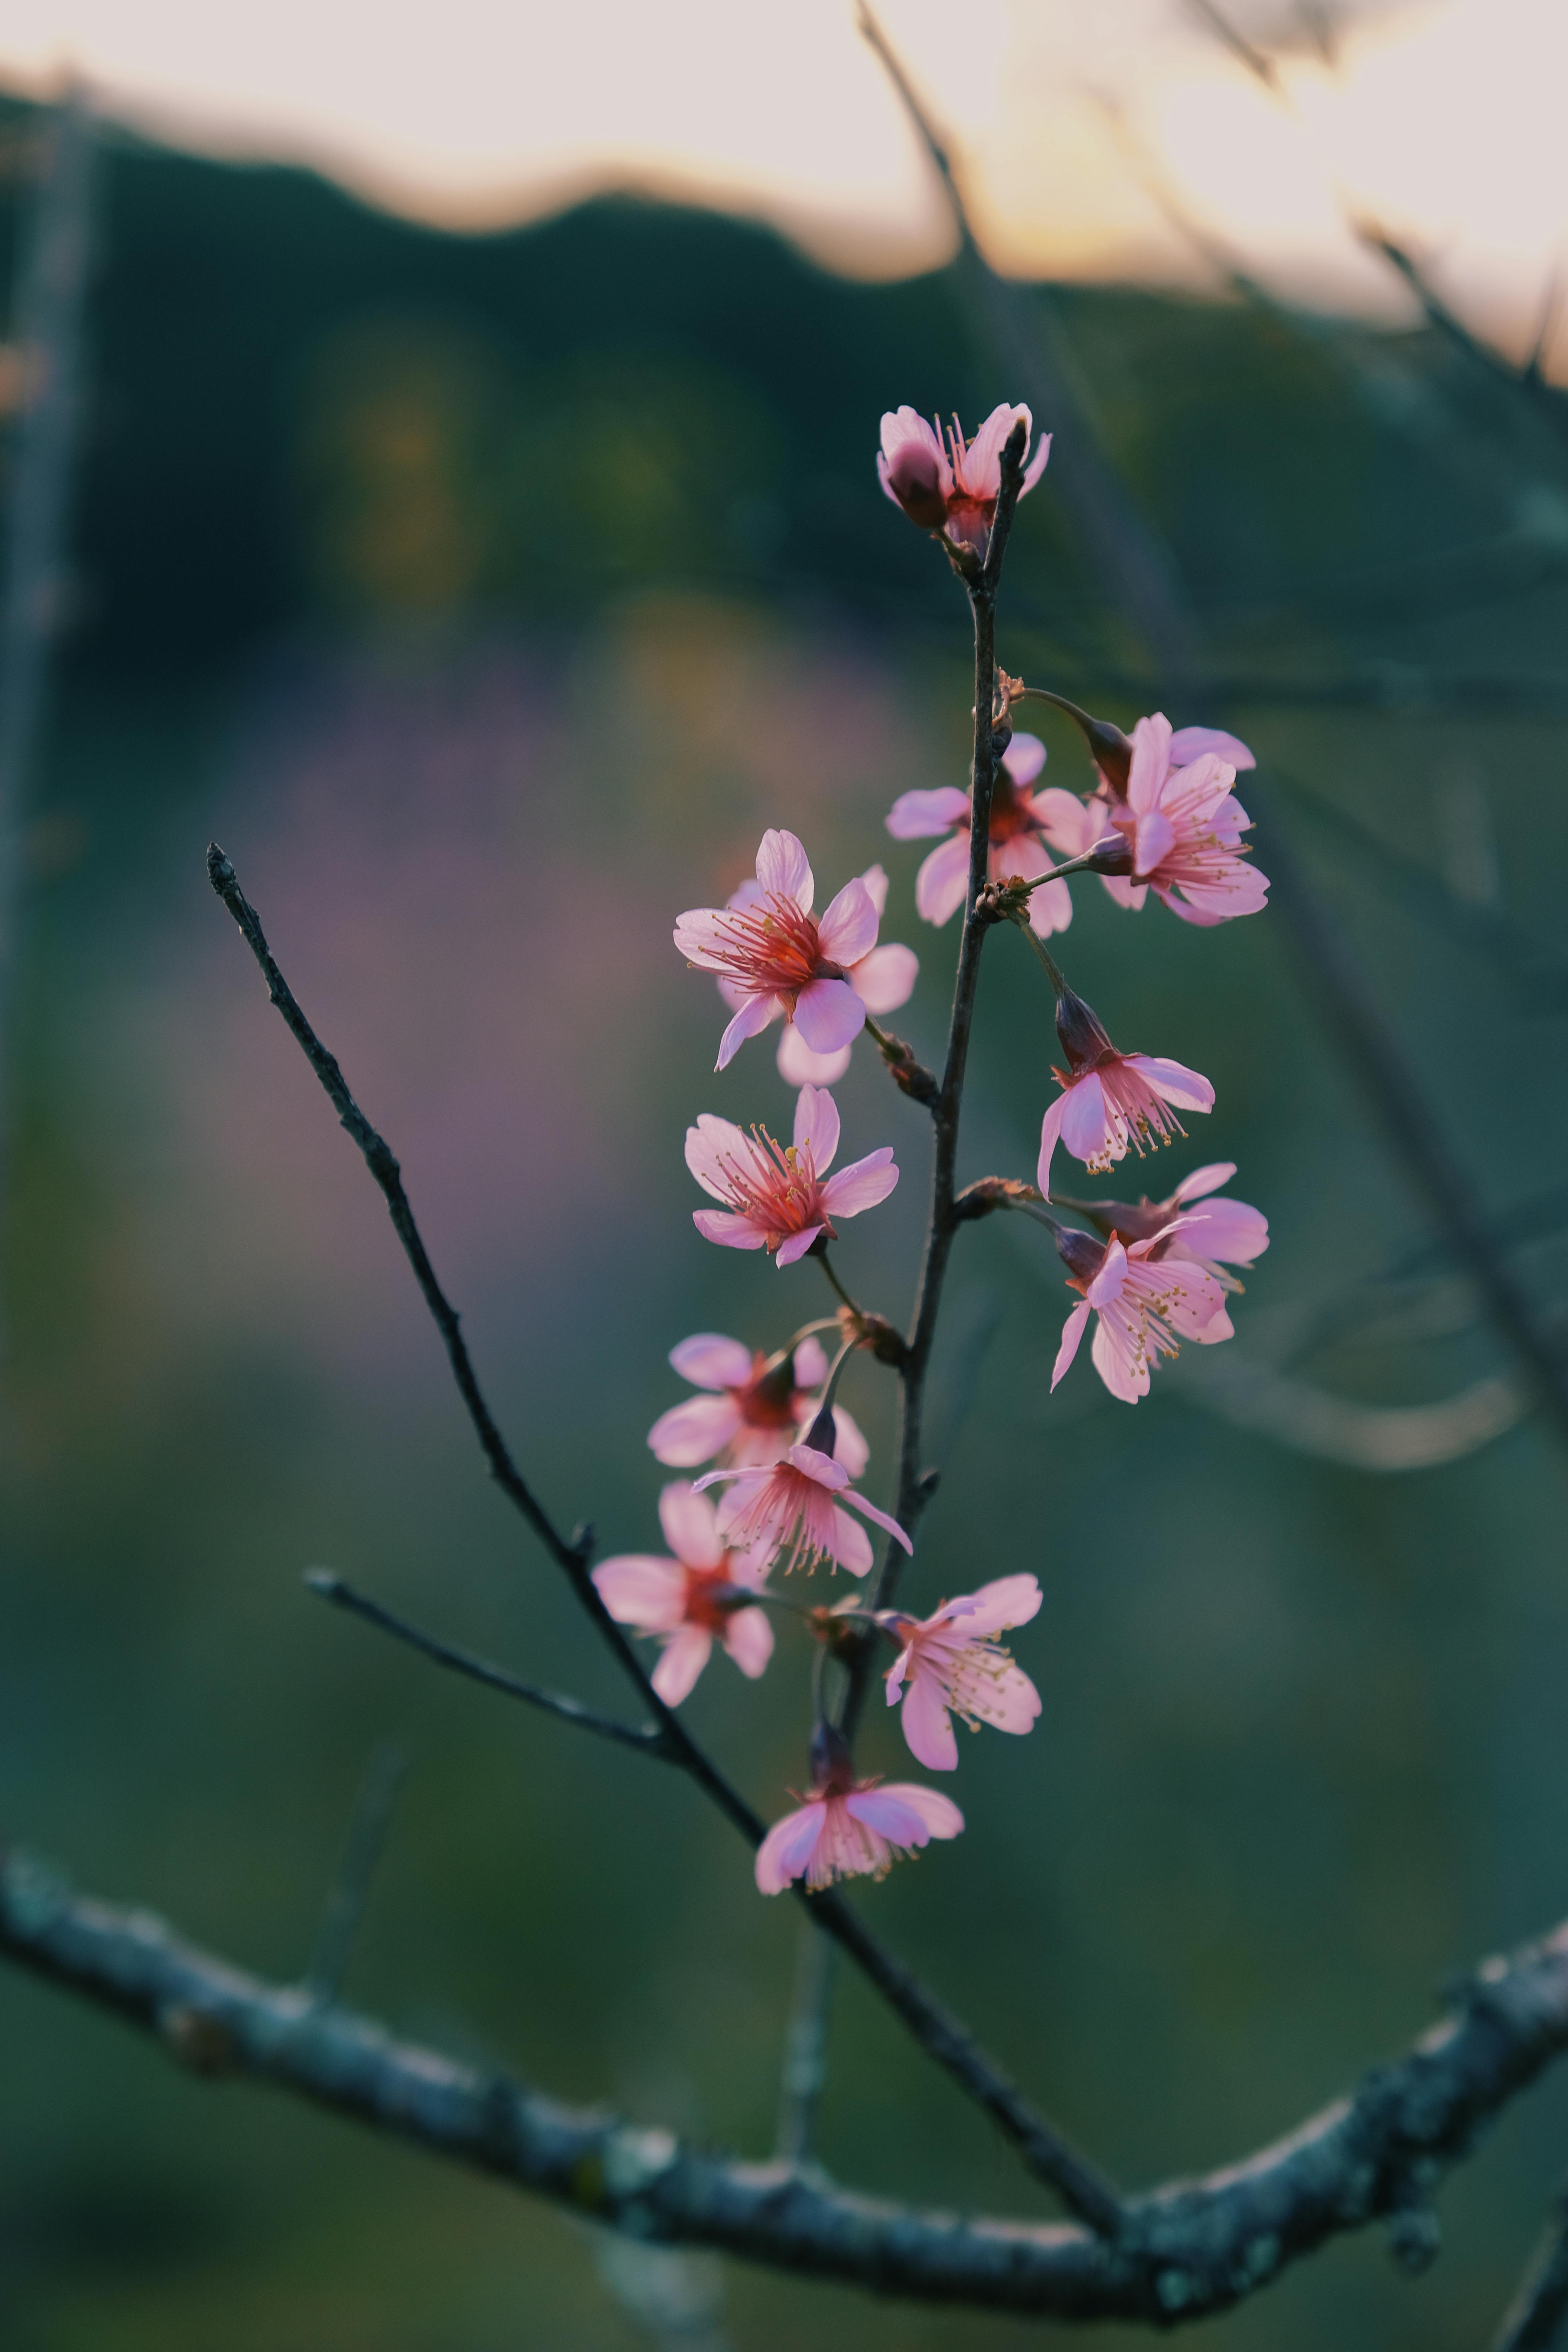 First Flowers: Bức ảnh về những bông hoa đầu tiên của mùa xuân sẽ khiến bạn cảm thấy như đang tươi cười với cuộc sống. Hãy để hình ảnh đưa bạn đến với mùi hương ngọt ngào và niềm vui của mùa xuân đầu tiên.